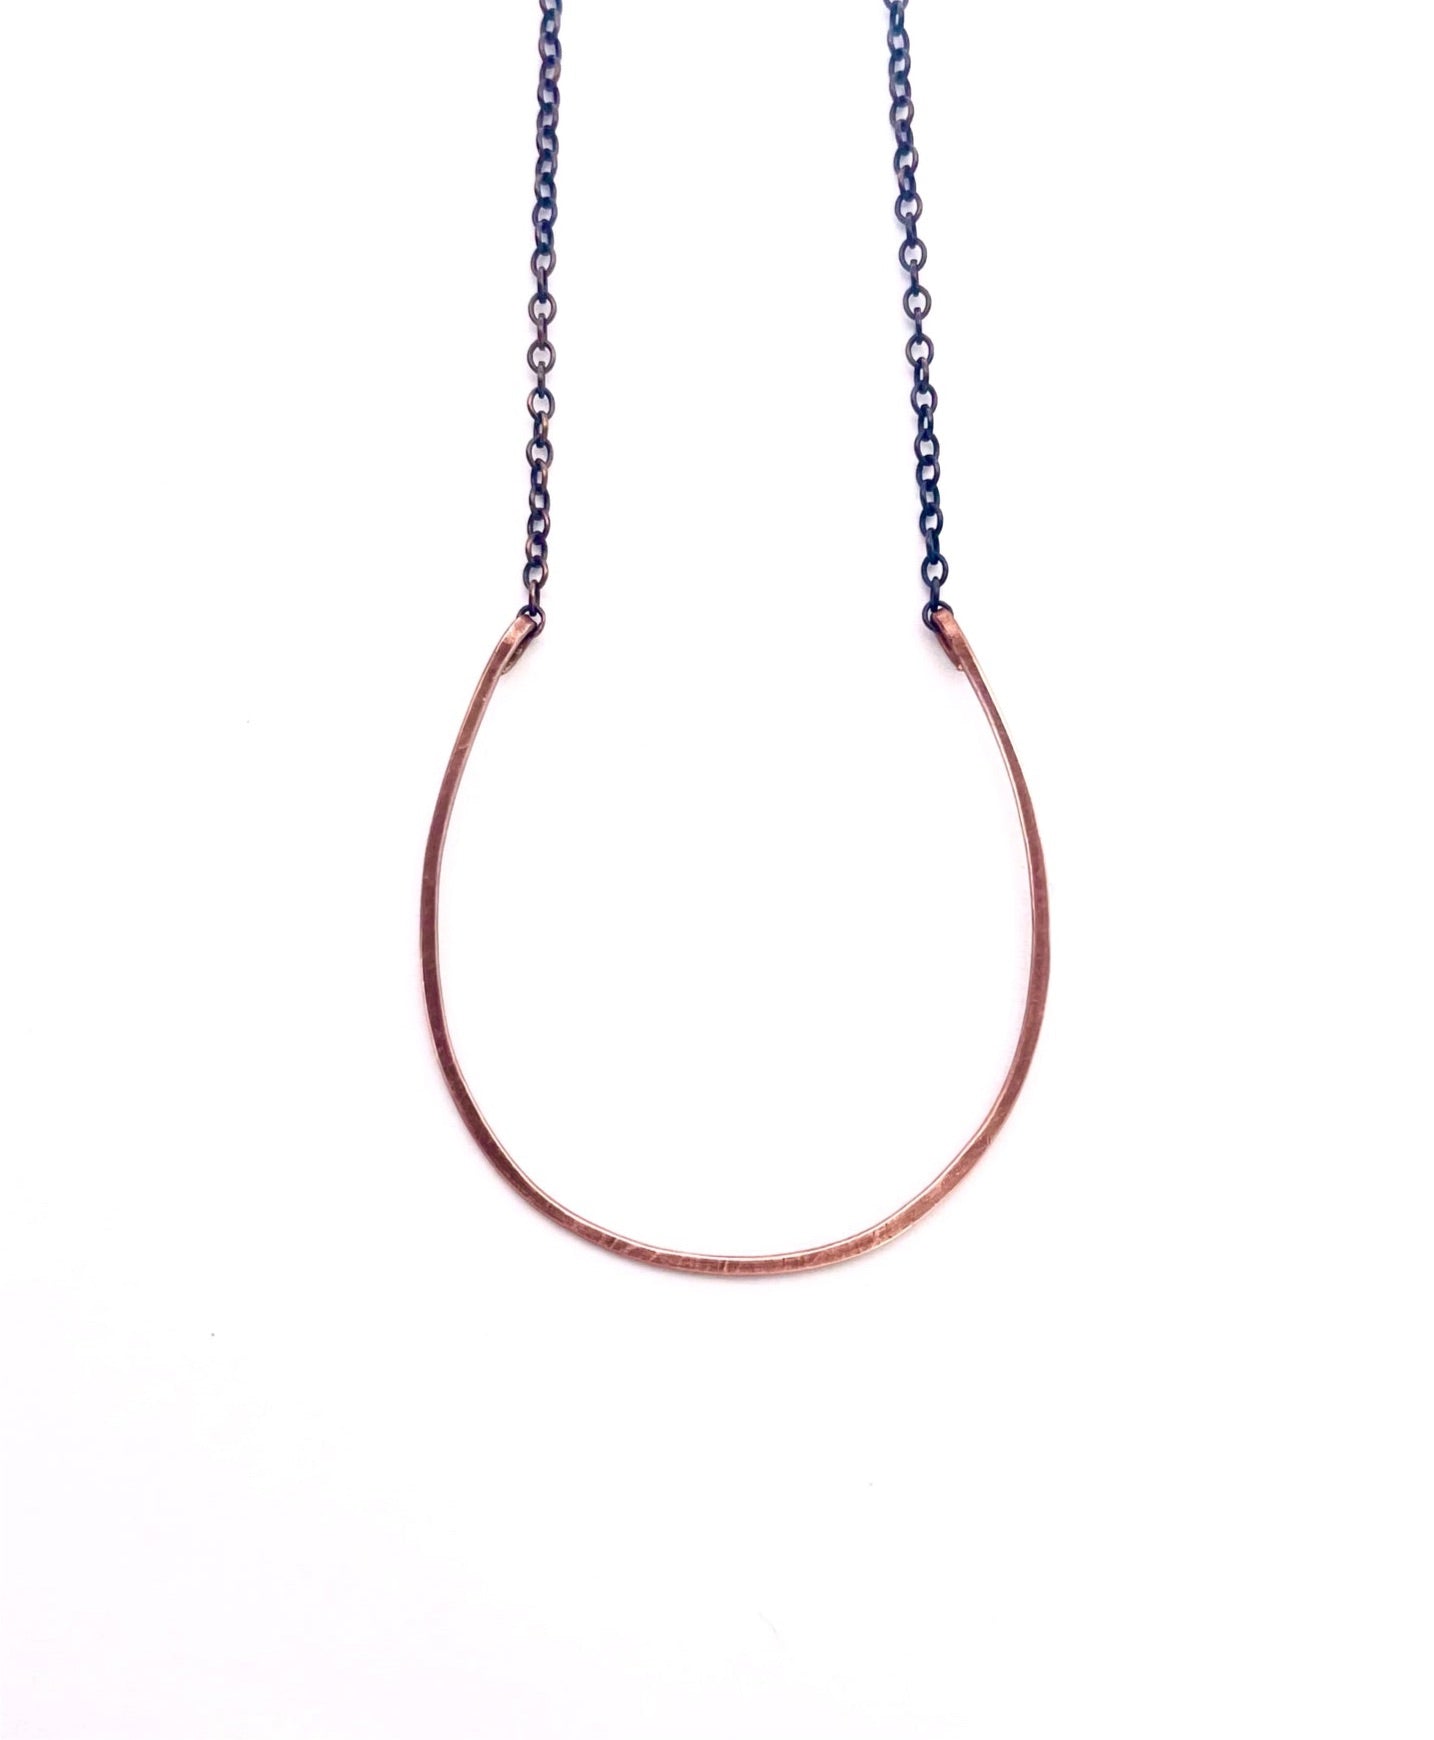 Horseshoe Necklace, Large